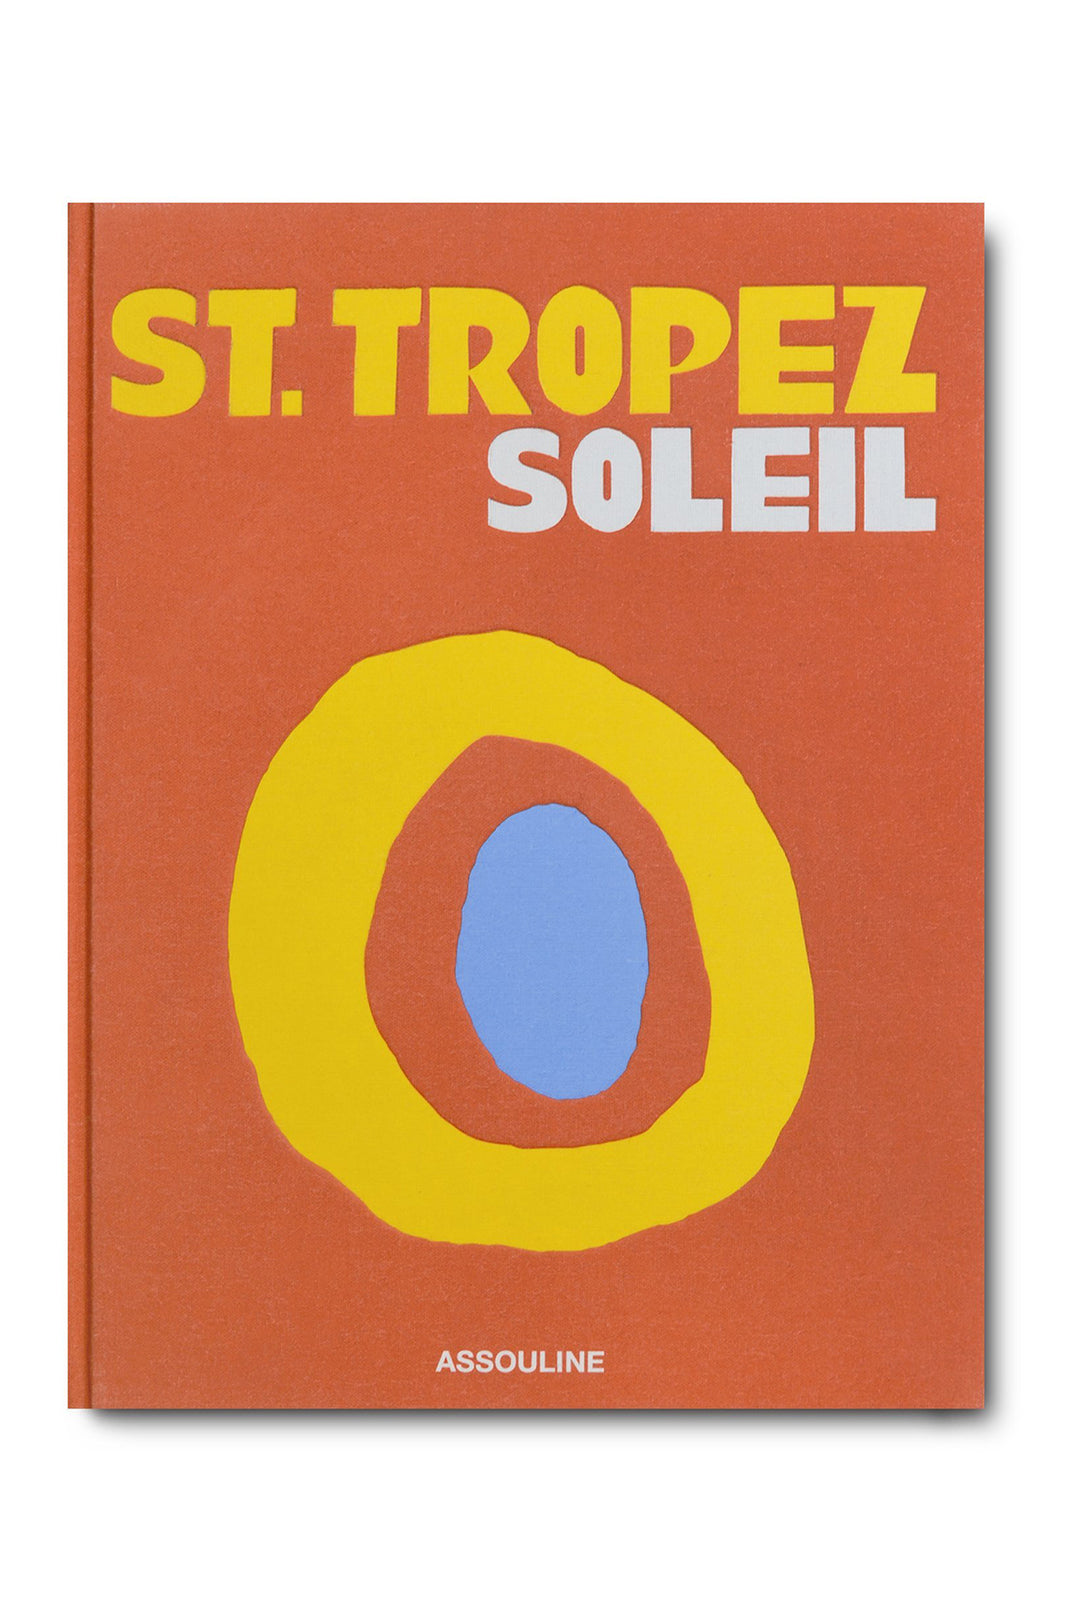 Saint Tropez Soleil - Assouline - CLT